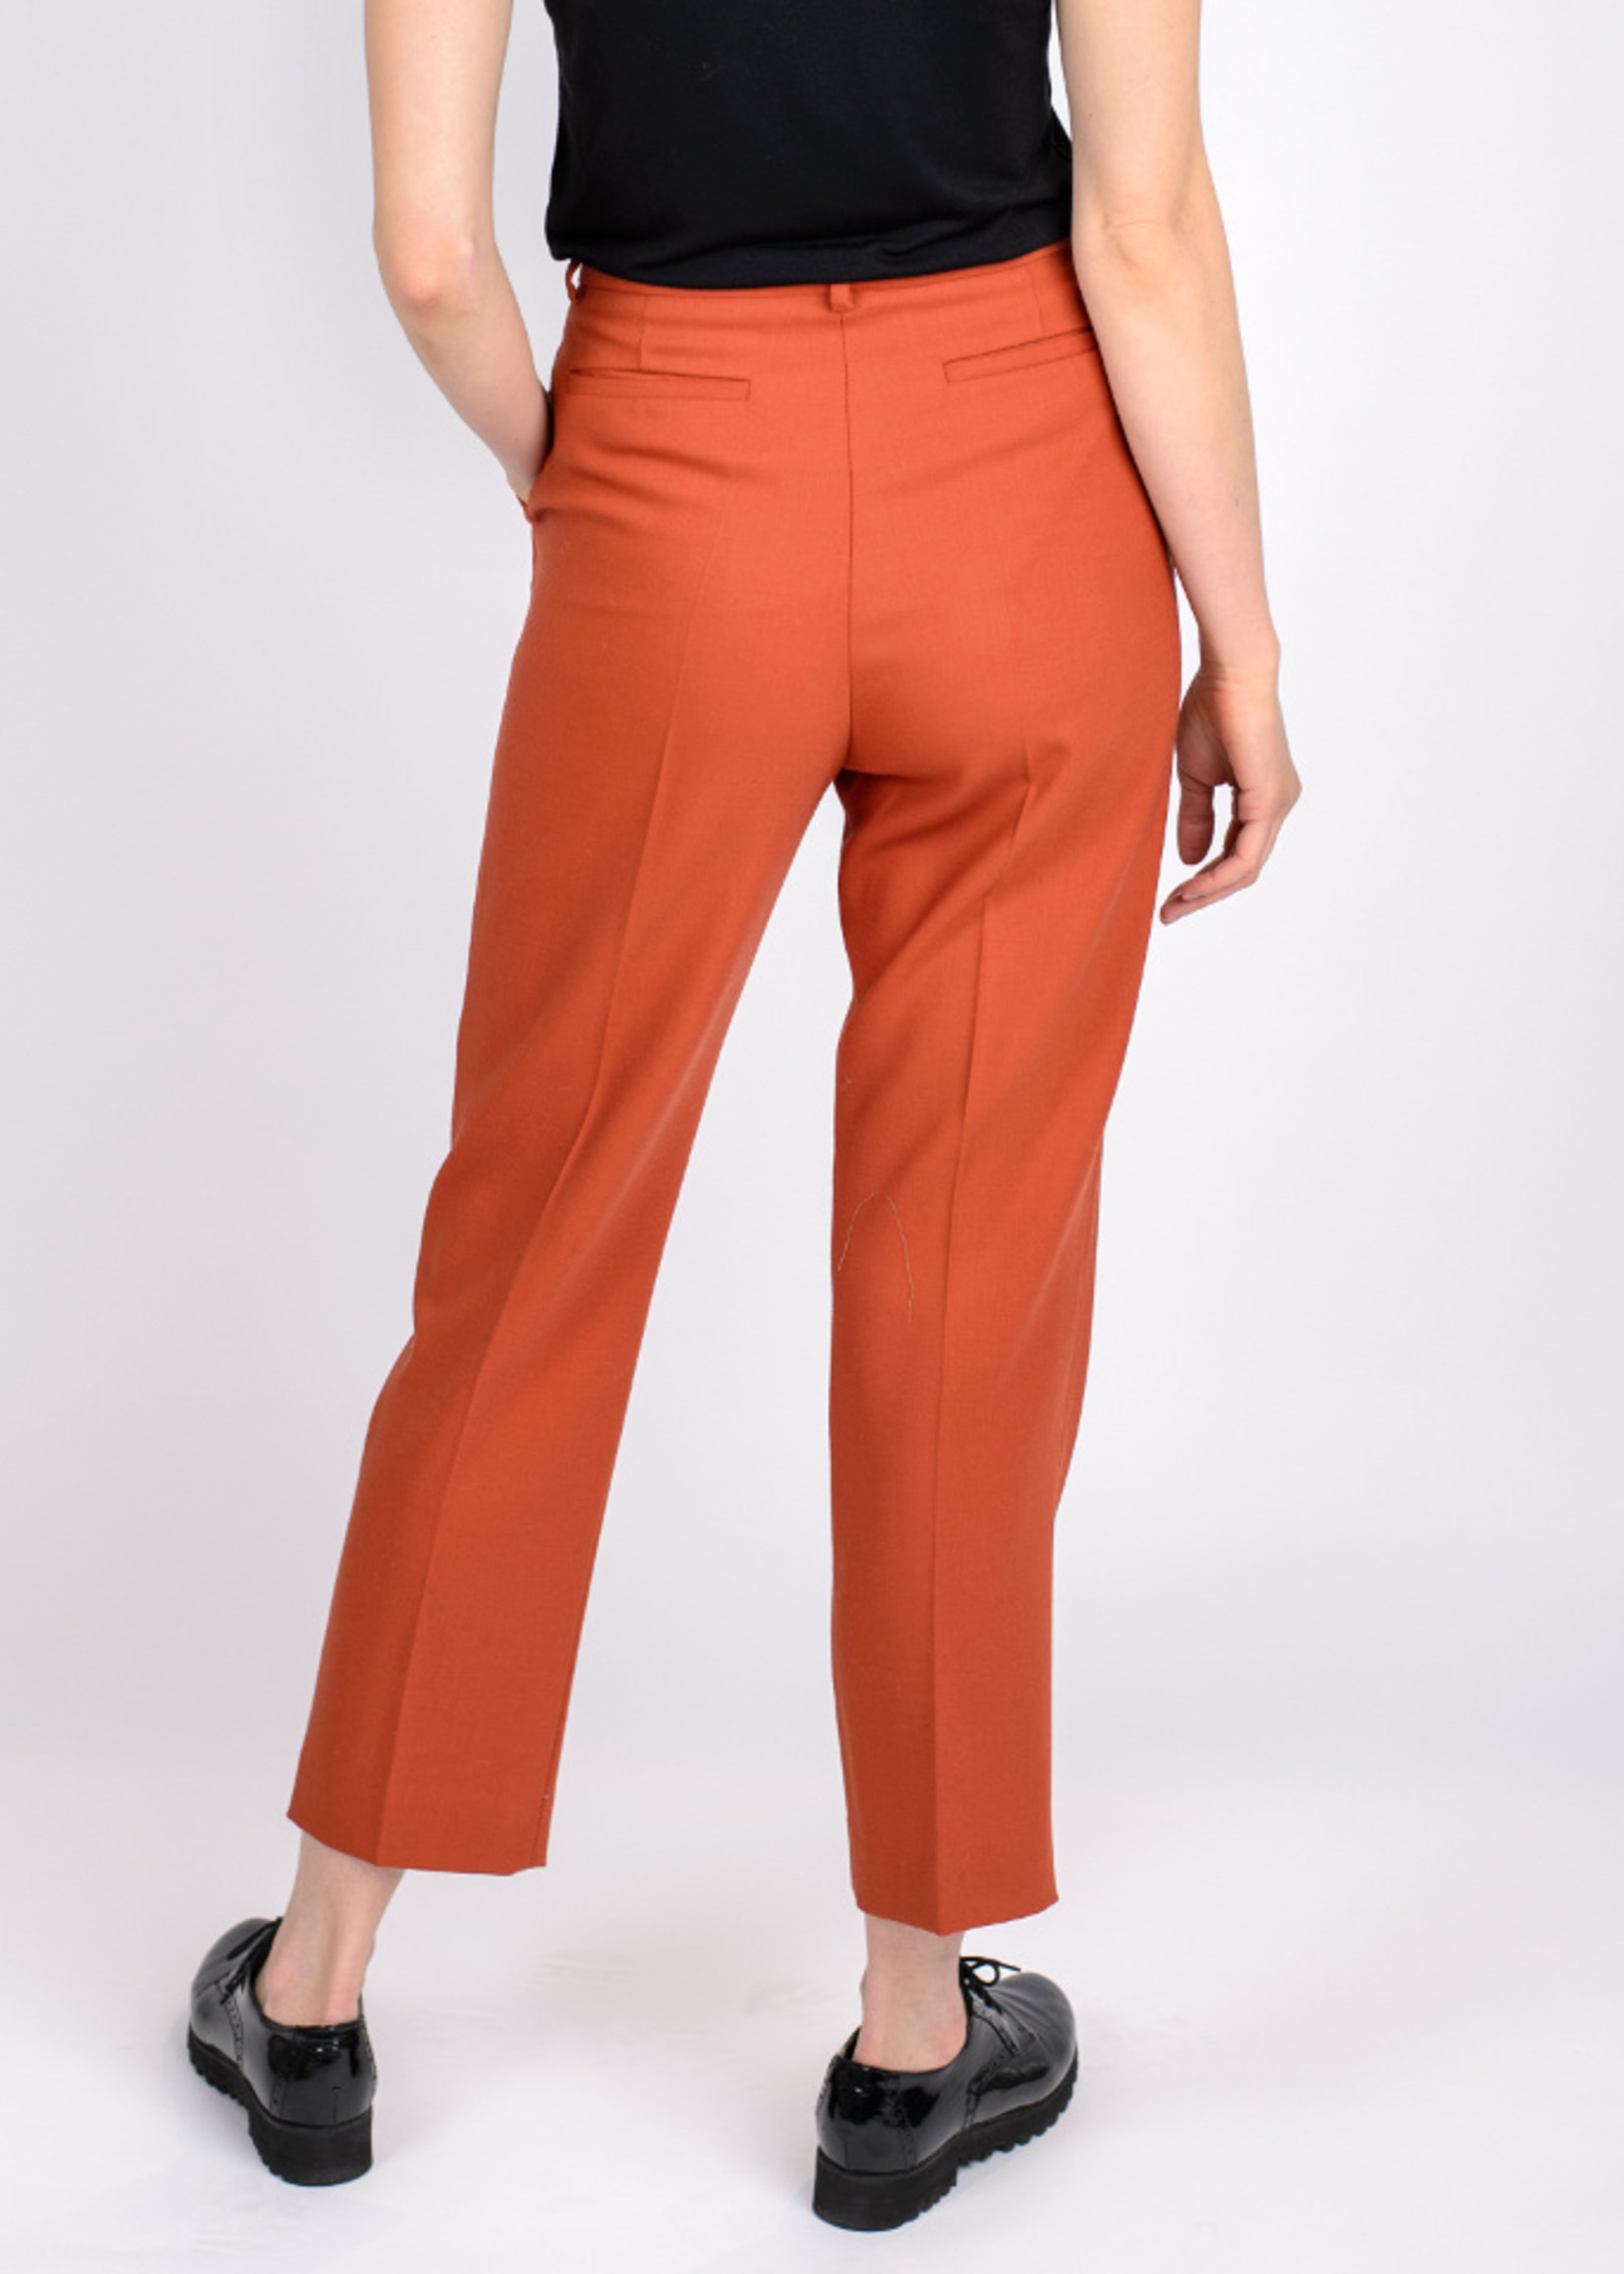 Pants BELA | Rusty orange